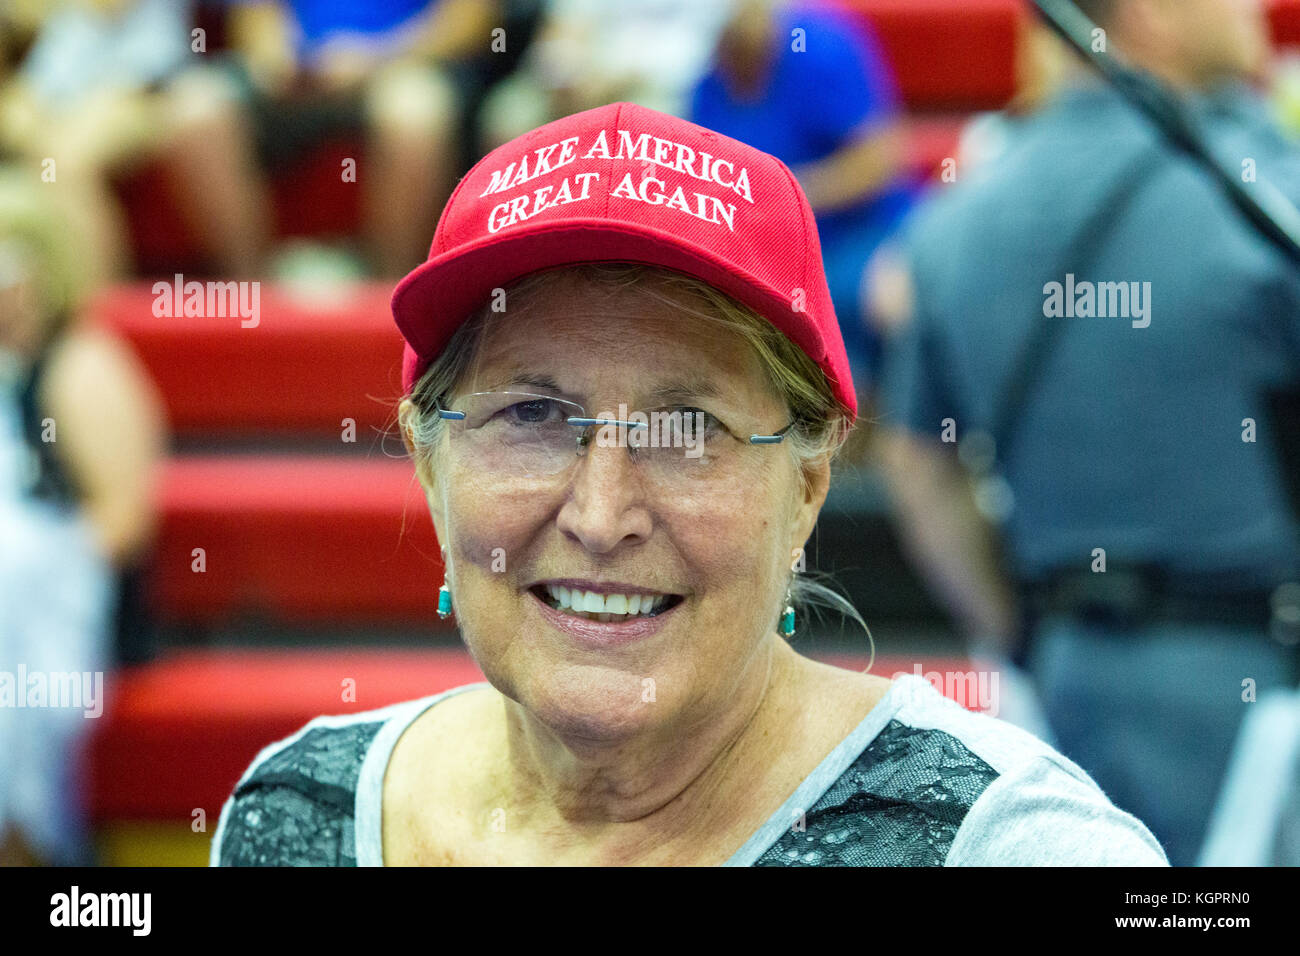 Mechanicsburg, Pa - 1. August 2016: ein Trumpf Anhänger tragen ein rotes, Amerika wieder einmal super Hut vor dem j Donald Trump politische Kundgebung. Stockfoto